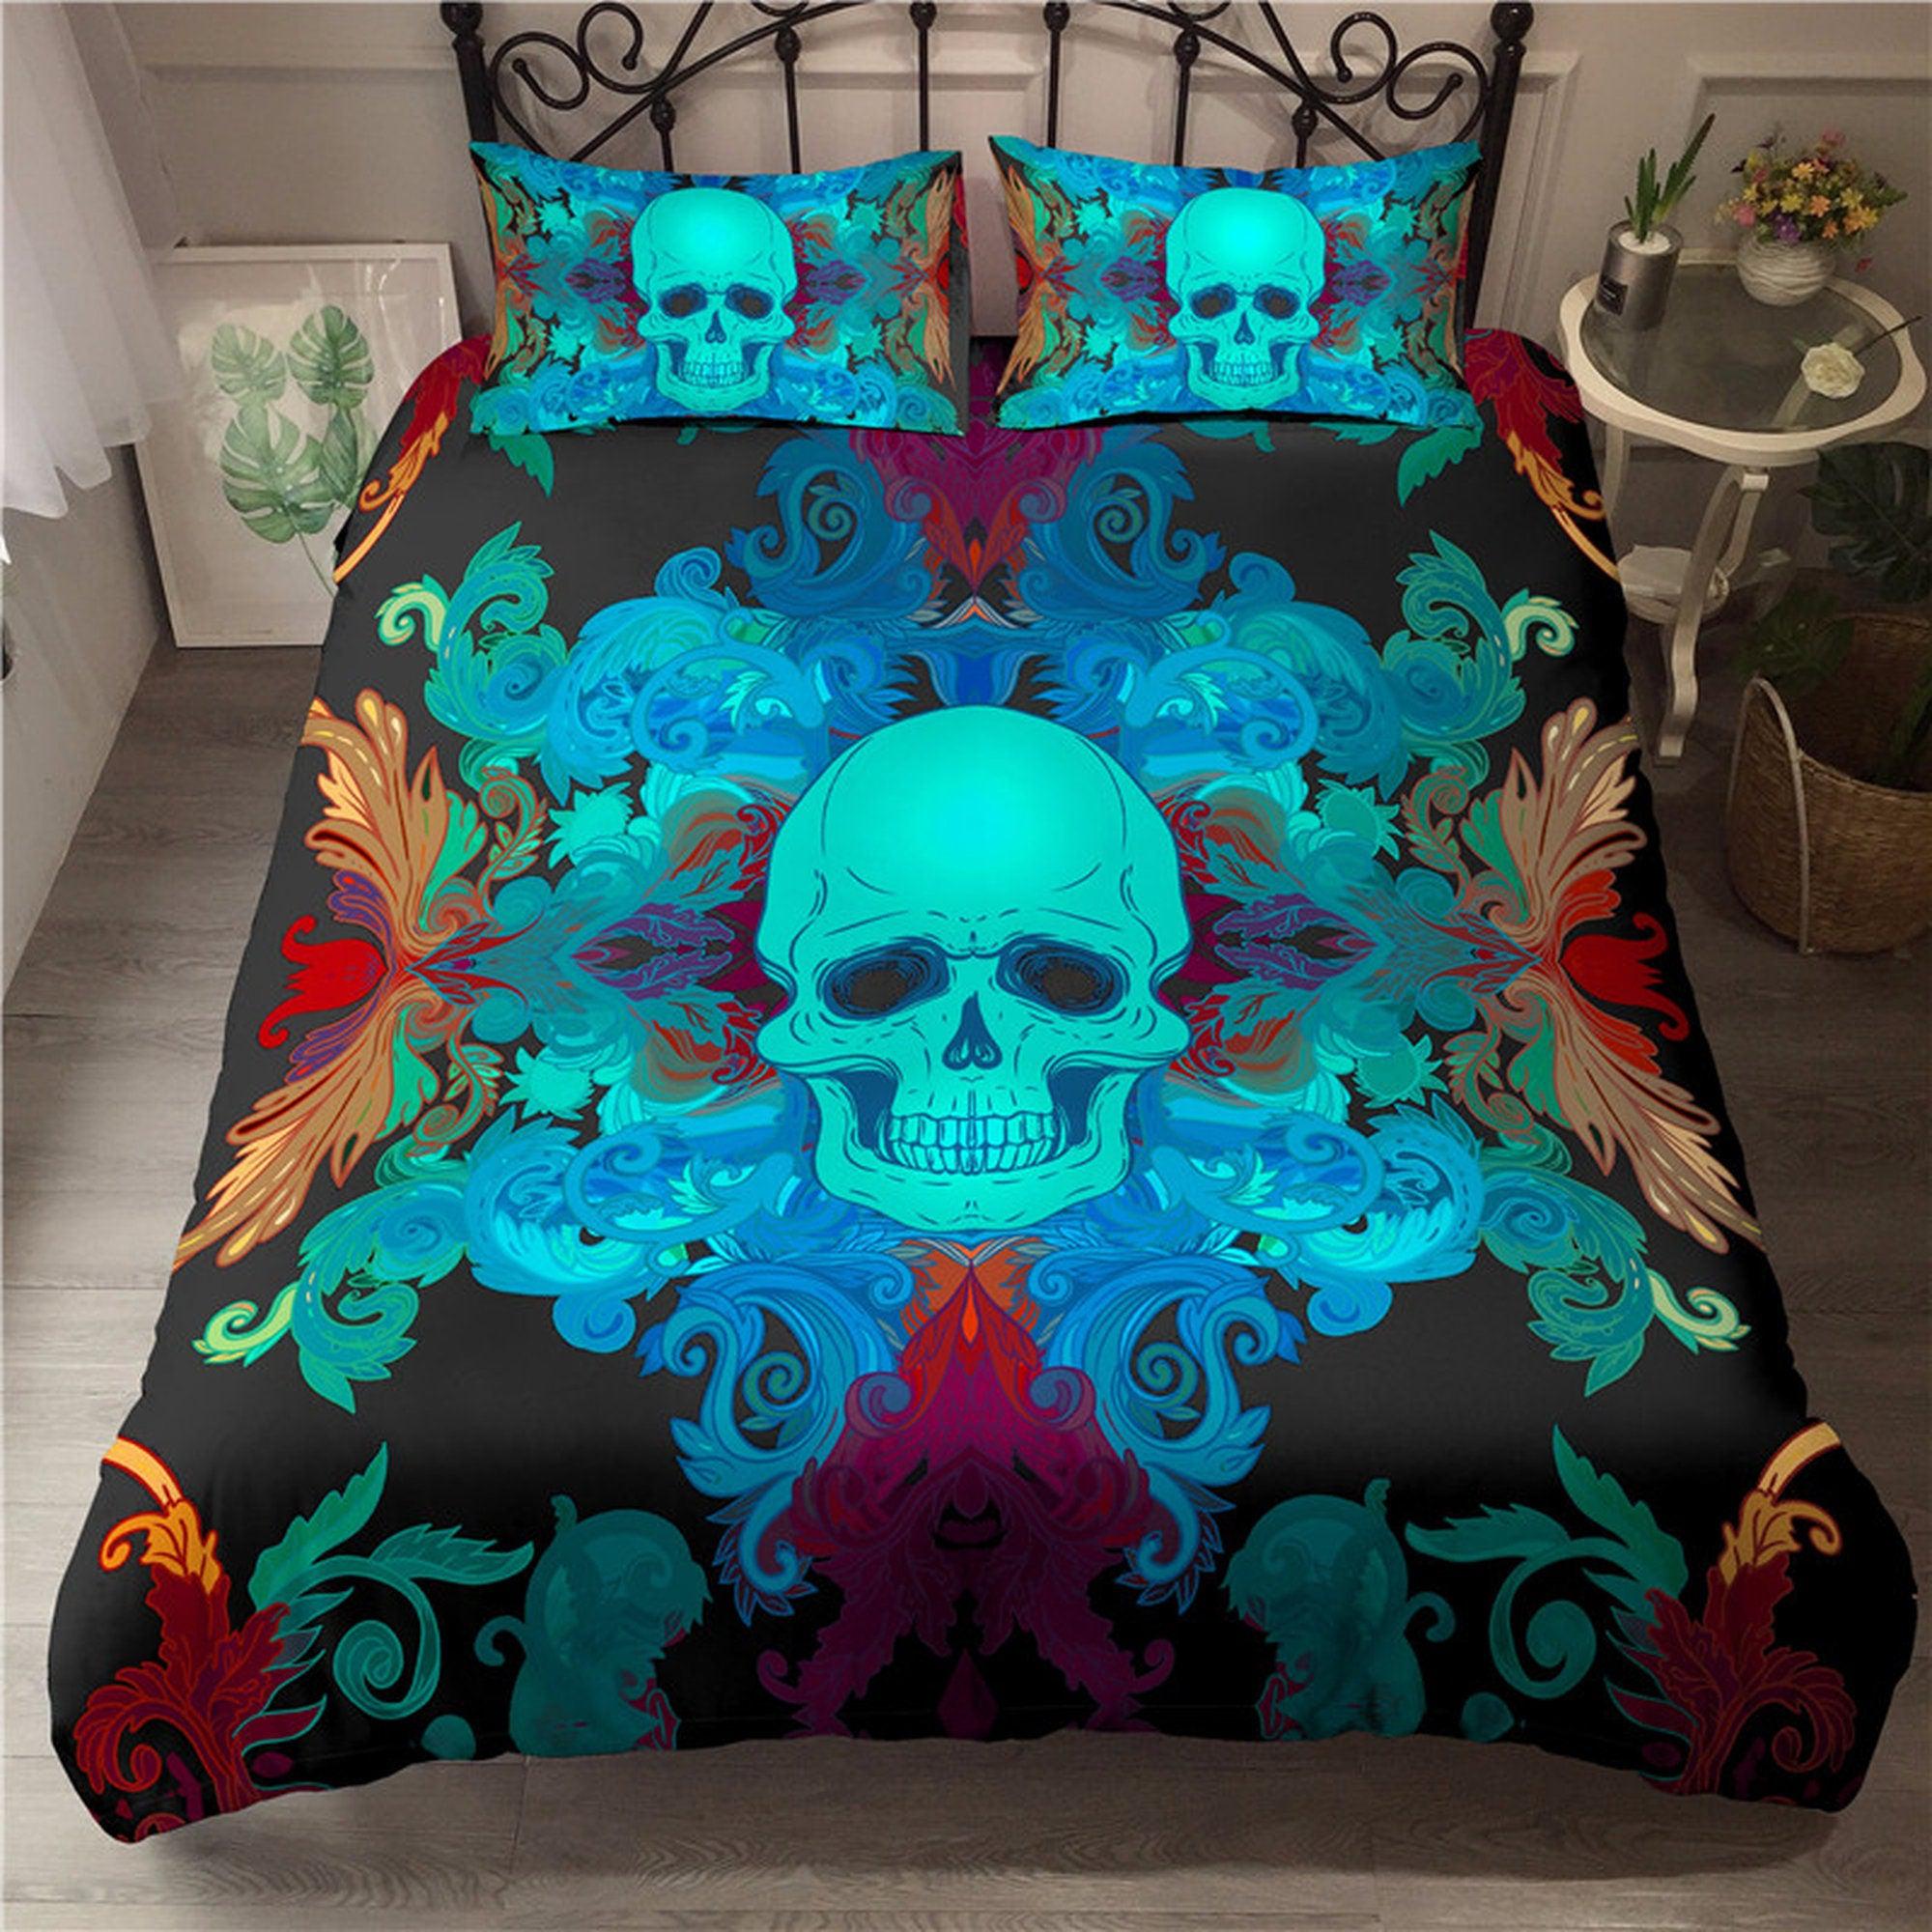 daintyduvet Neon Skull Black Duvet Cover Set Bedspread, Dorm Bedding with Pillowcase